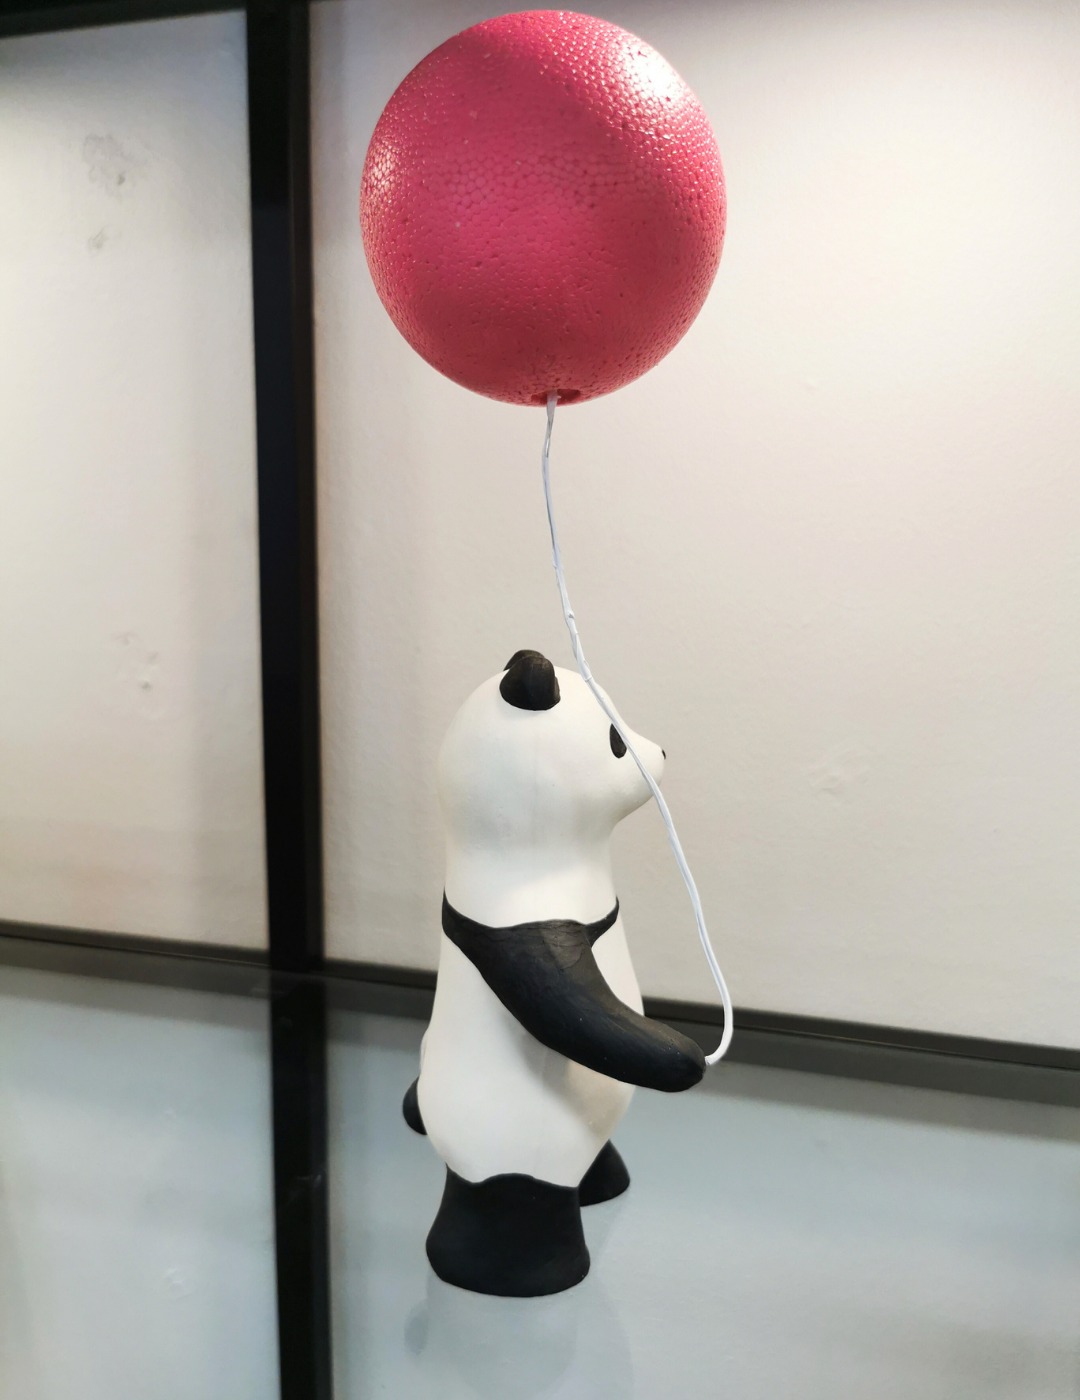 Panda ja Pinkki pallo (keraaminen veistos)